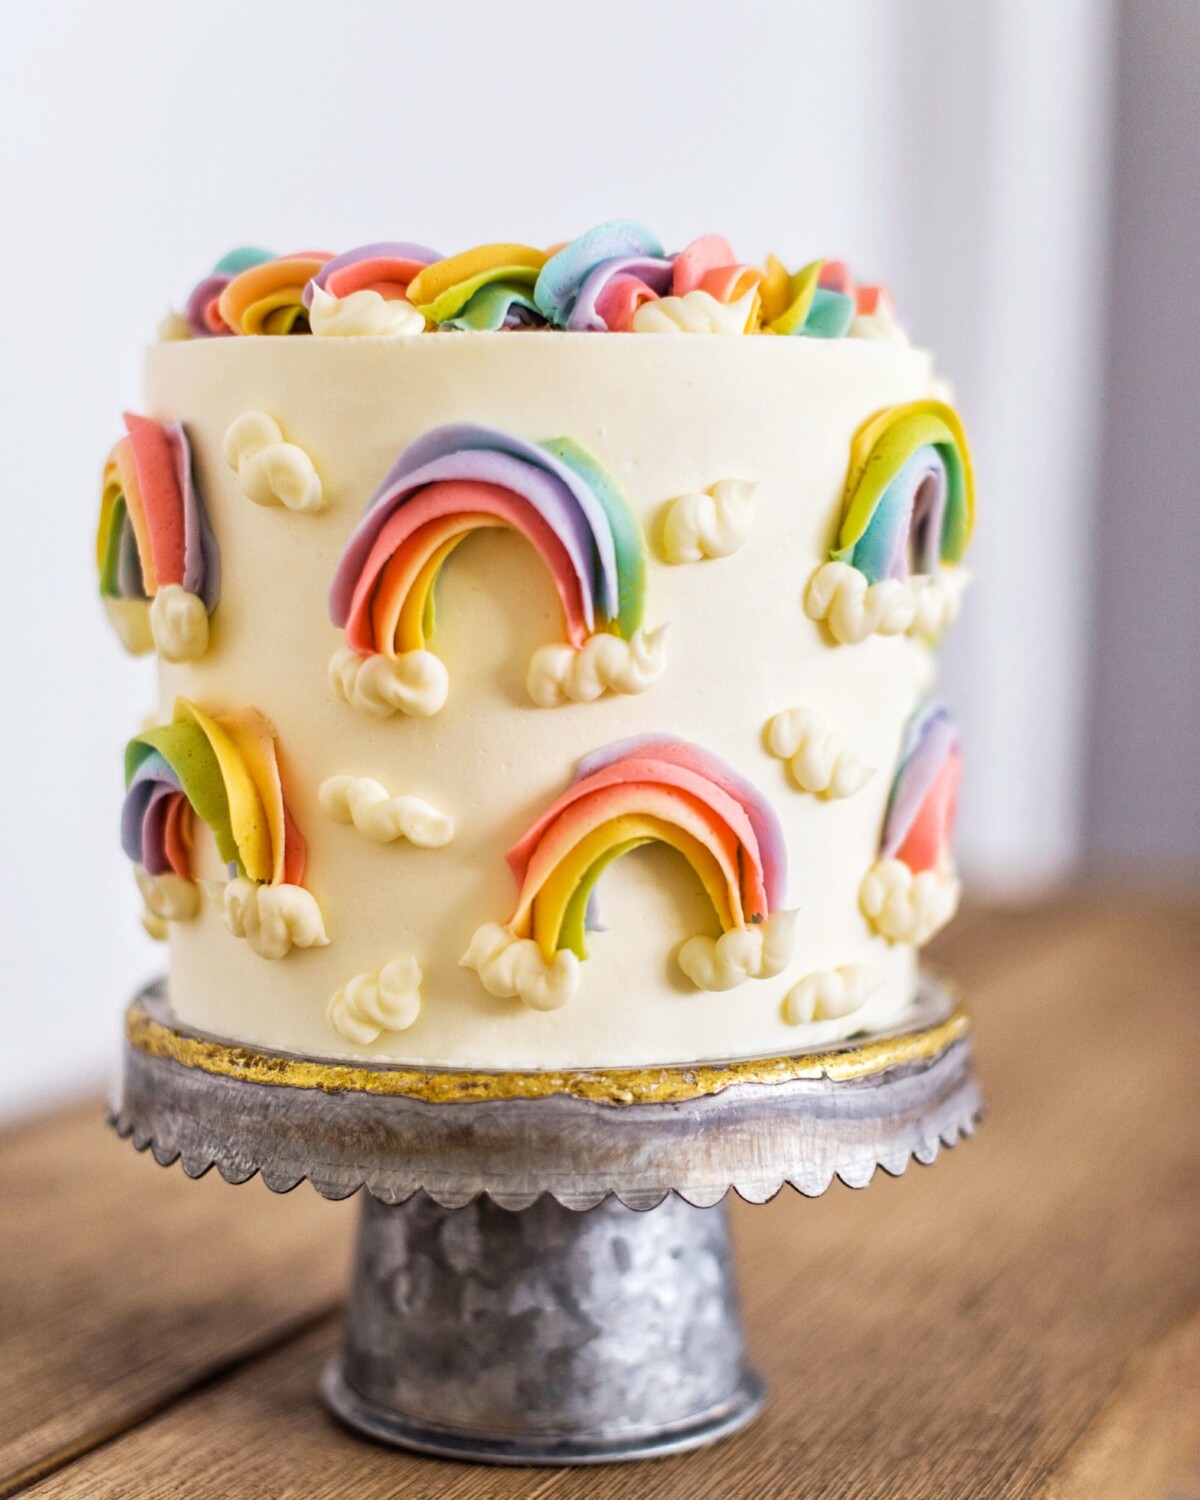 rainbow cake tutorial. www.cakebycourtney.com